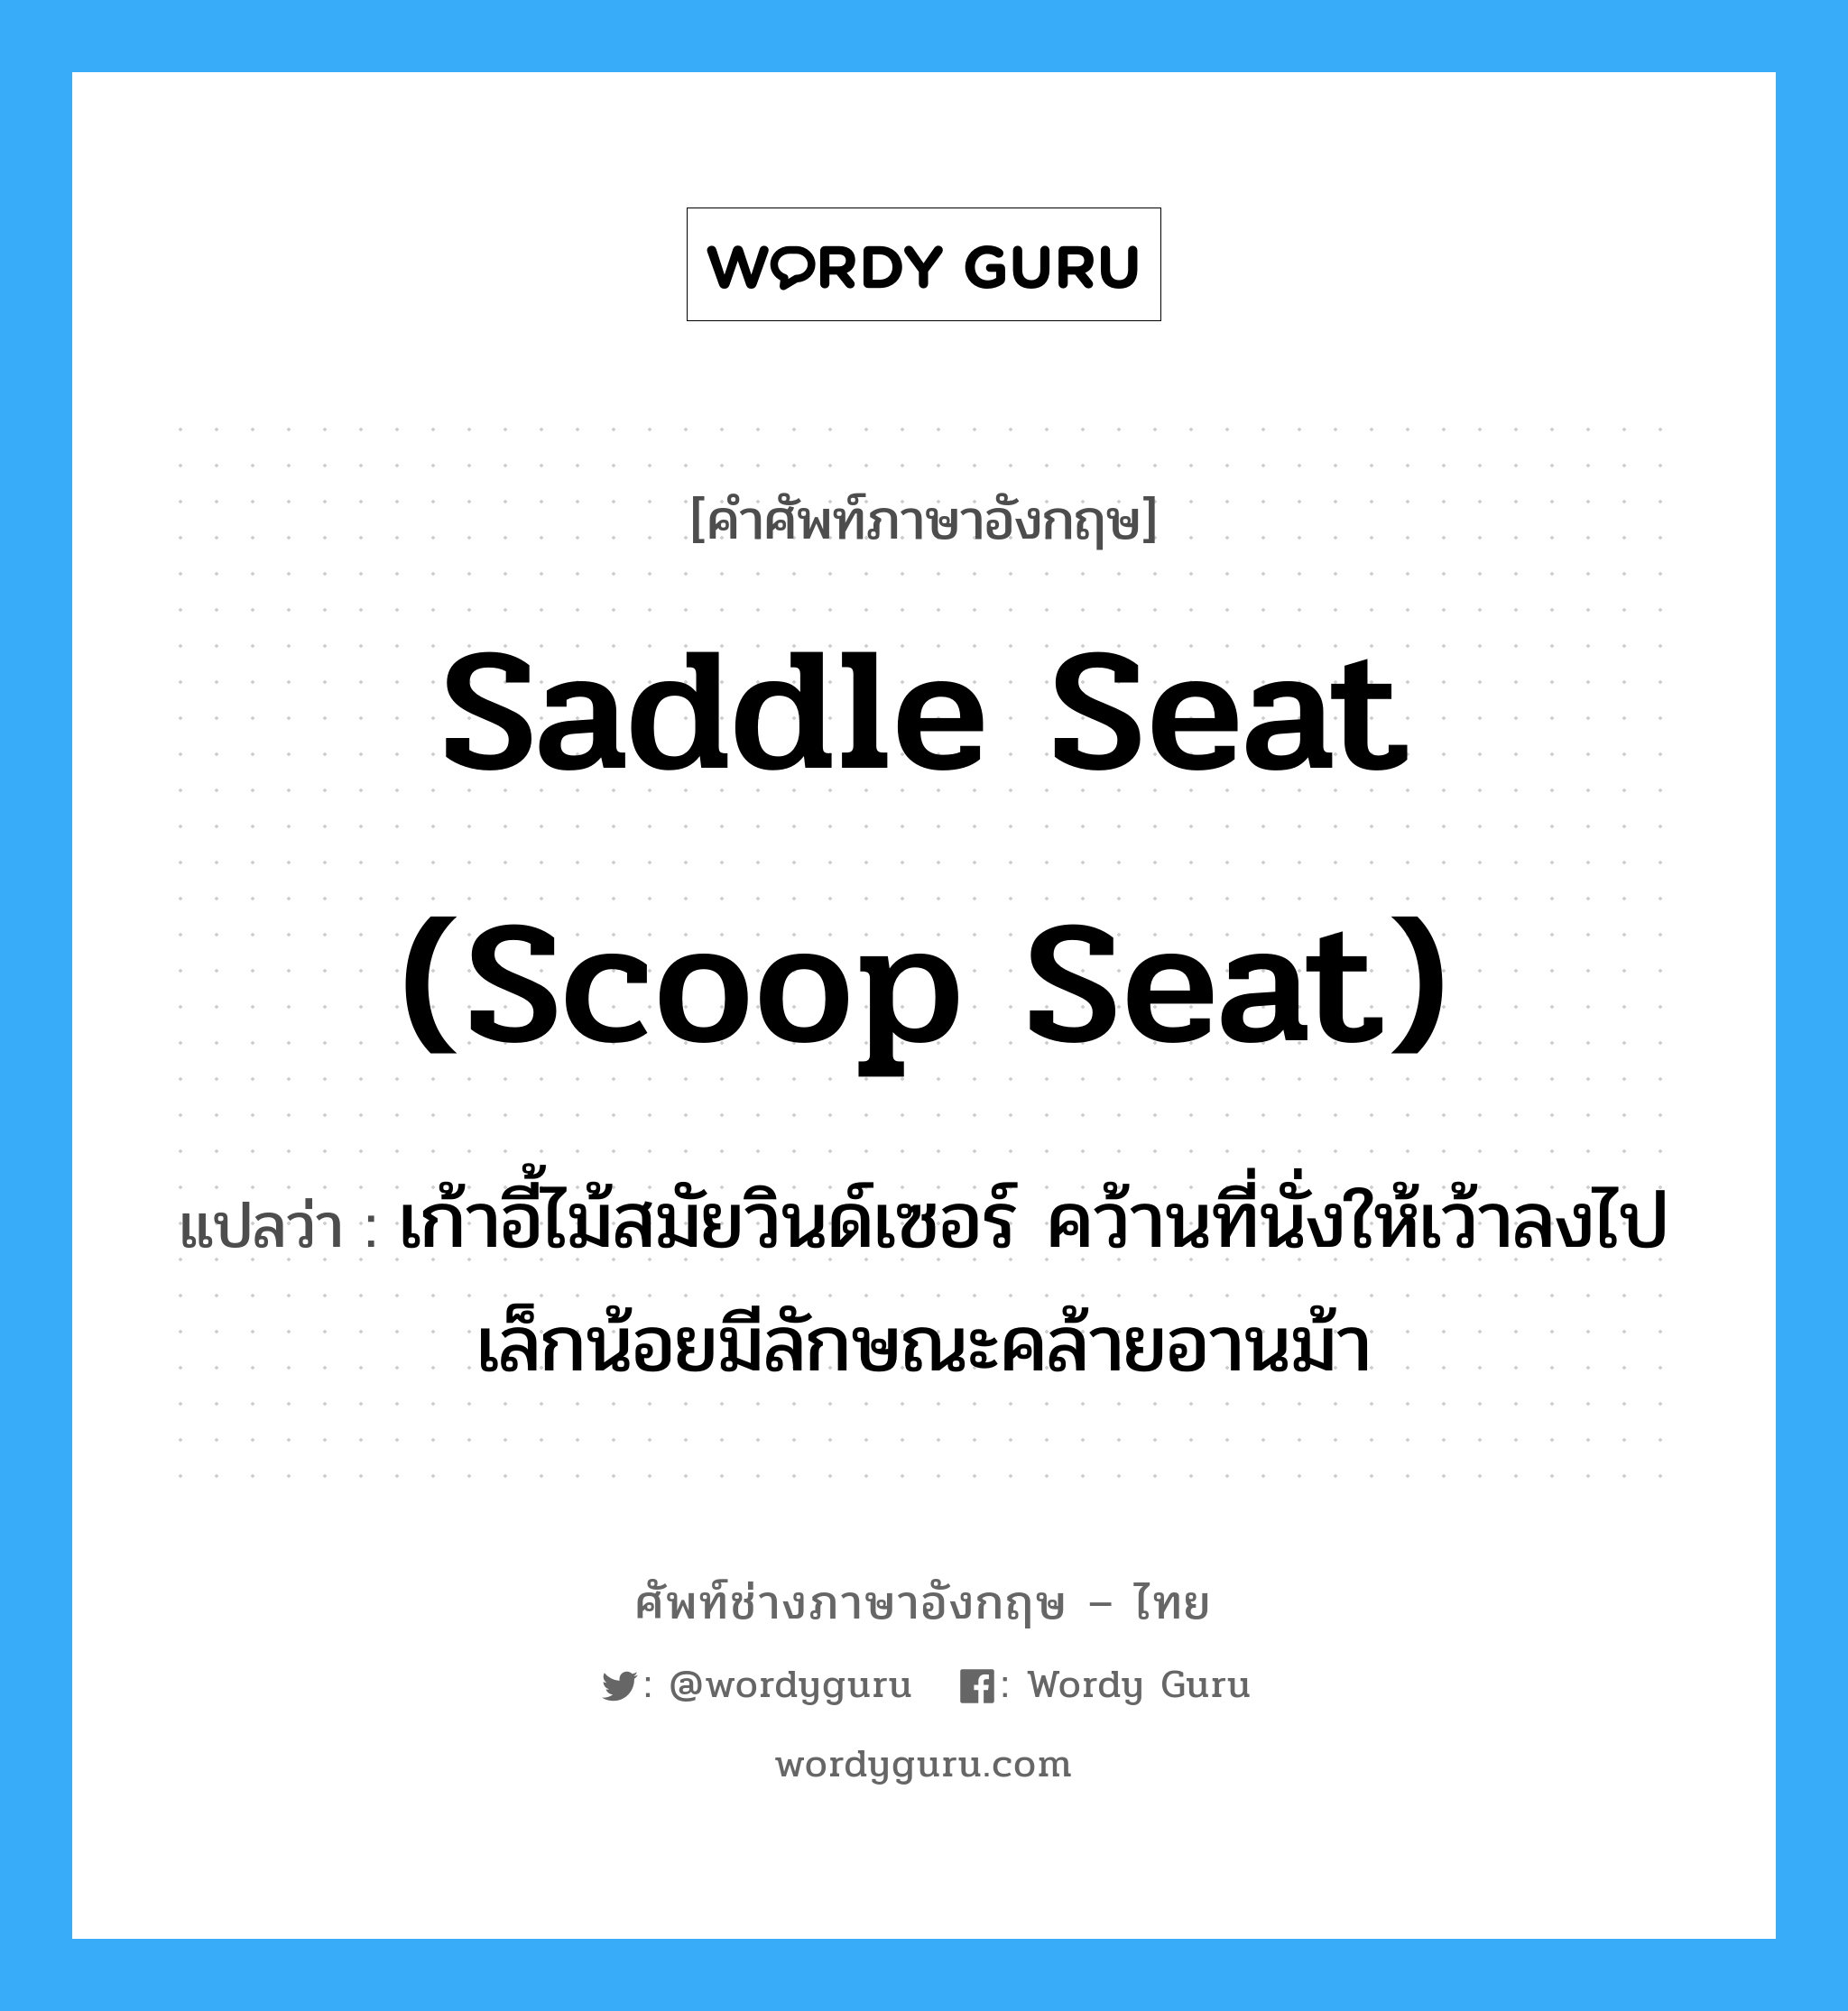 saddle seat (scoop seat) แปลว่า?, คำศัพท์ช่างภาษาอังกฤษ - ไทย saddle seat (scoop seat) คำศัพท์ภาษาอังกฤษ saddle seat (scoop seat) แปลว่า เก้าอี้ไม้สมัยวินด์เซอร์ คว้านที่นั่งให้เว้าลงไปเล็กน้อยมีลักษณะคล้ายอานม้า